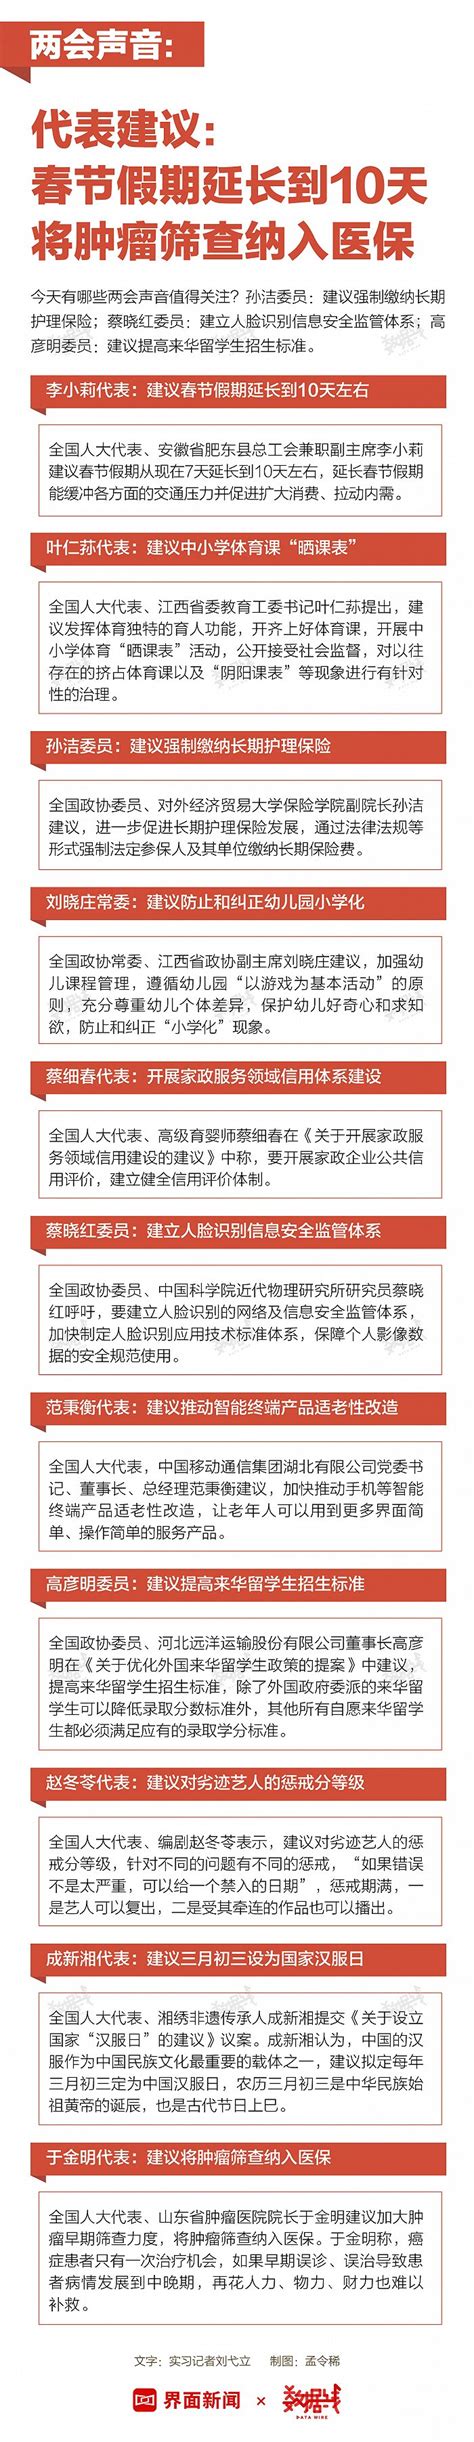 代表建议：春节假期延长到10天左右；将肿瘤筛查纳入医保｜两会声音|界面新闻 · 中国